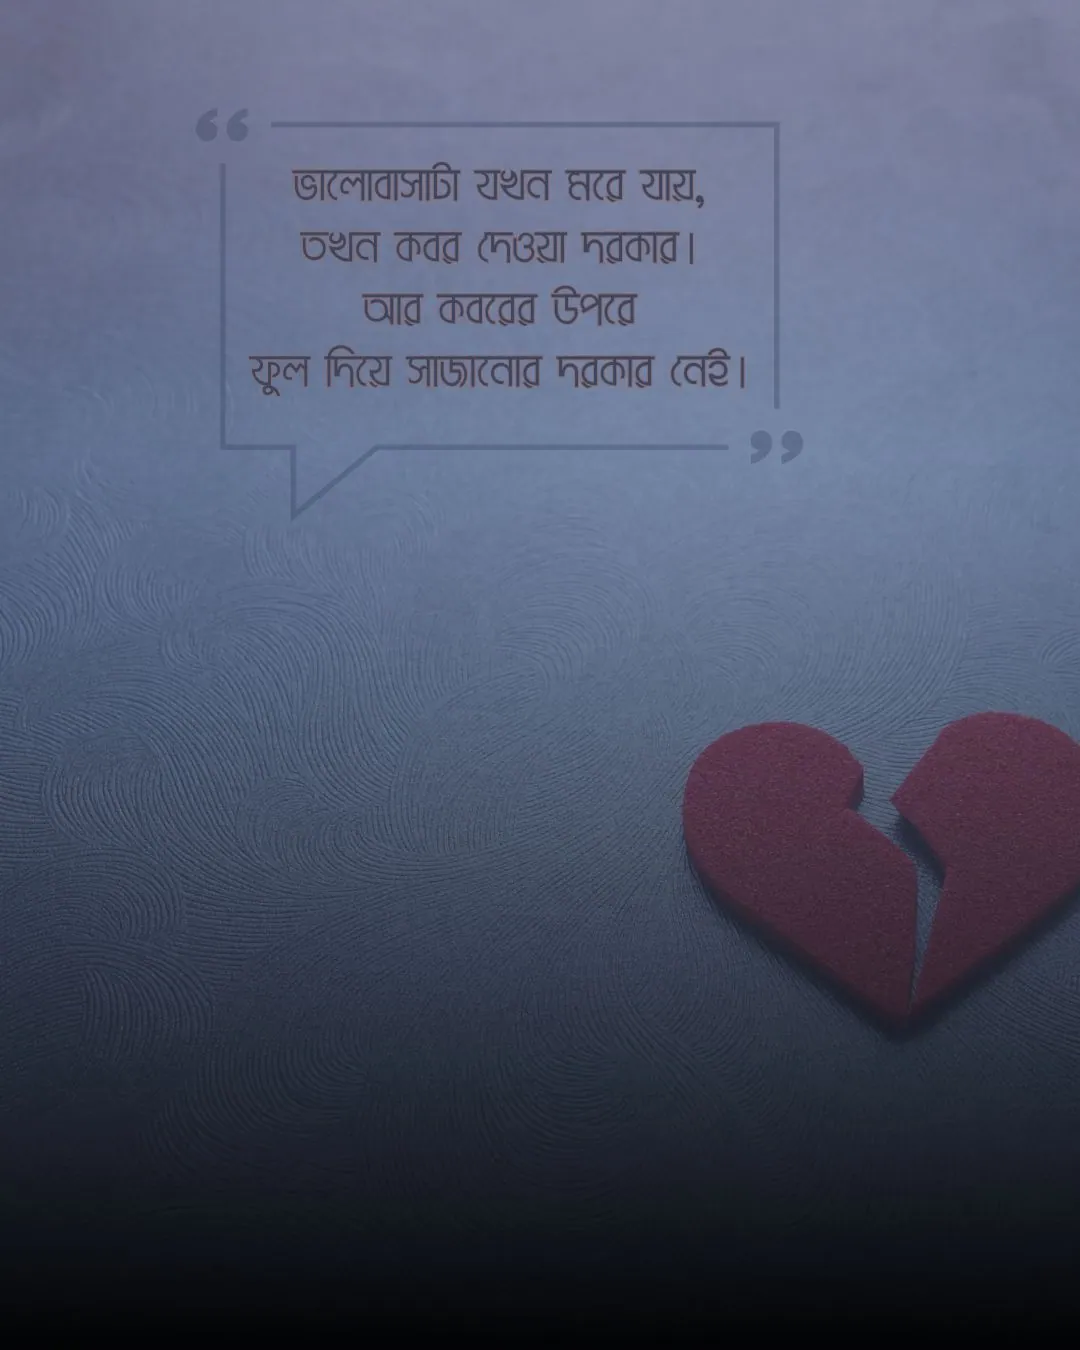 ব্রেকআপ সাইরি বাংলা (breakup shayari bengali)ছবি 1